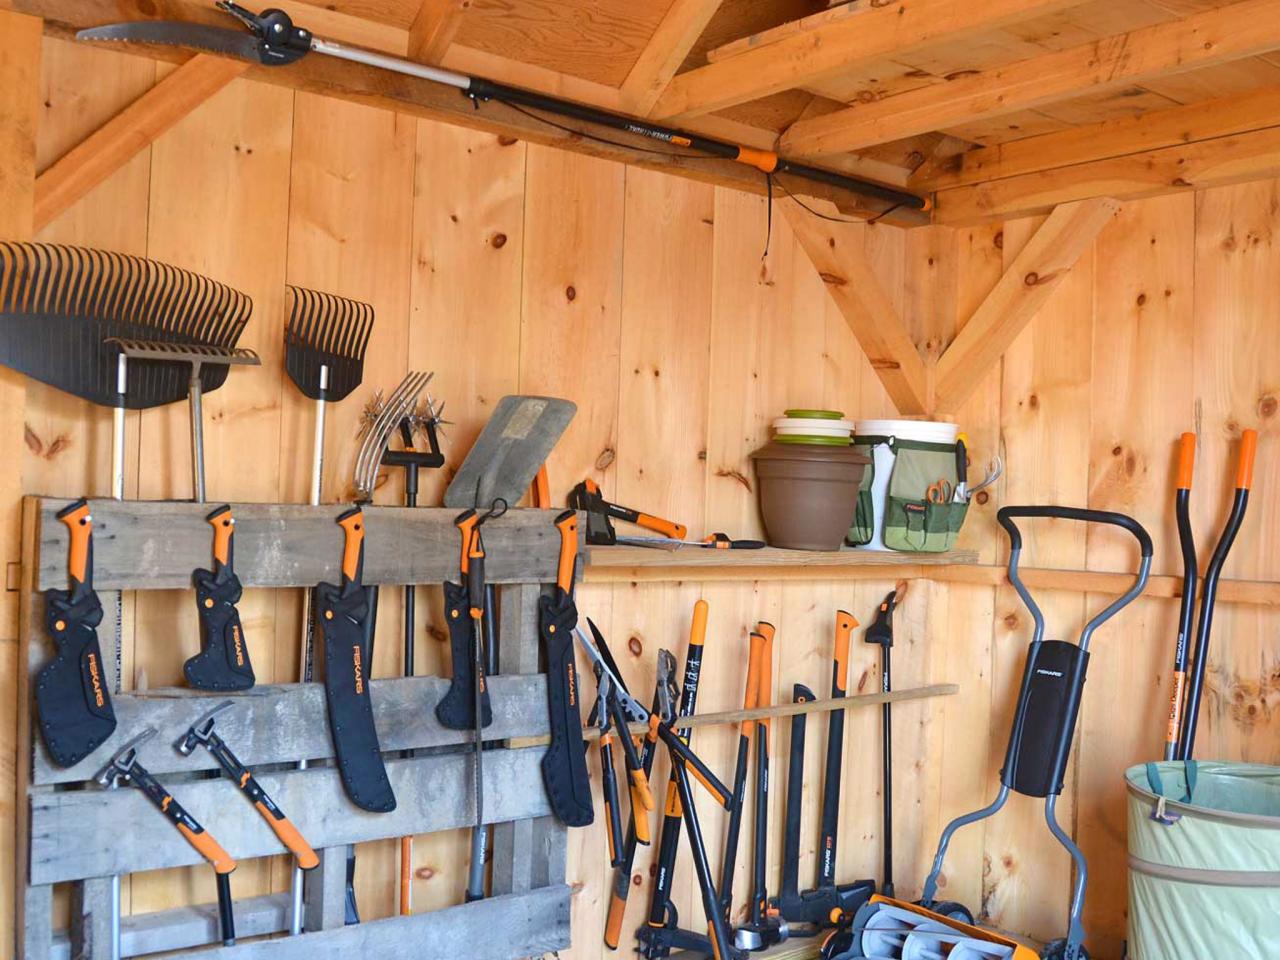 Tool Storage Ideas - How To Build A Garage Shelf | Fiskars | how-tos | DIY